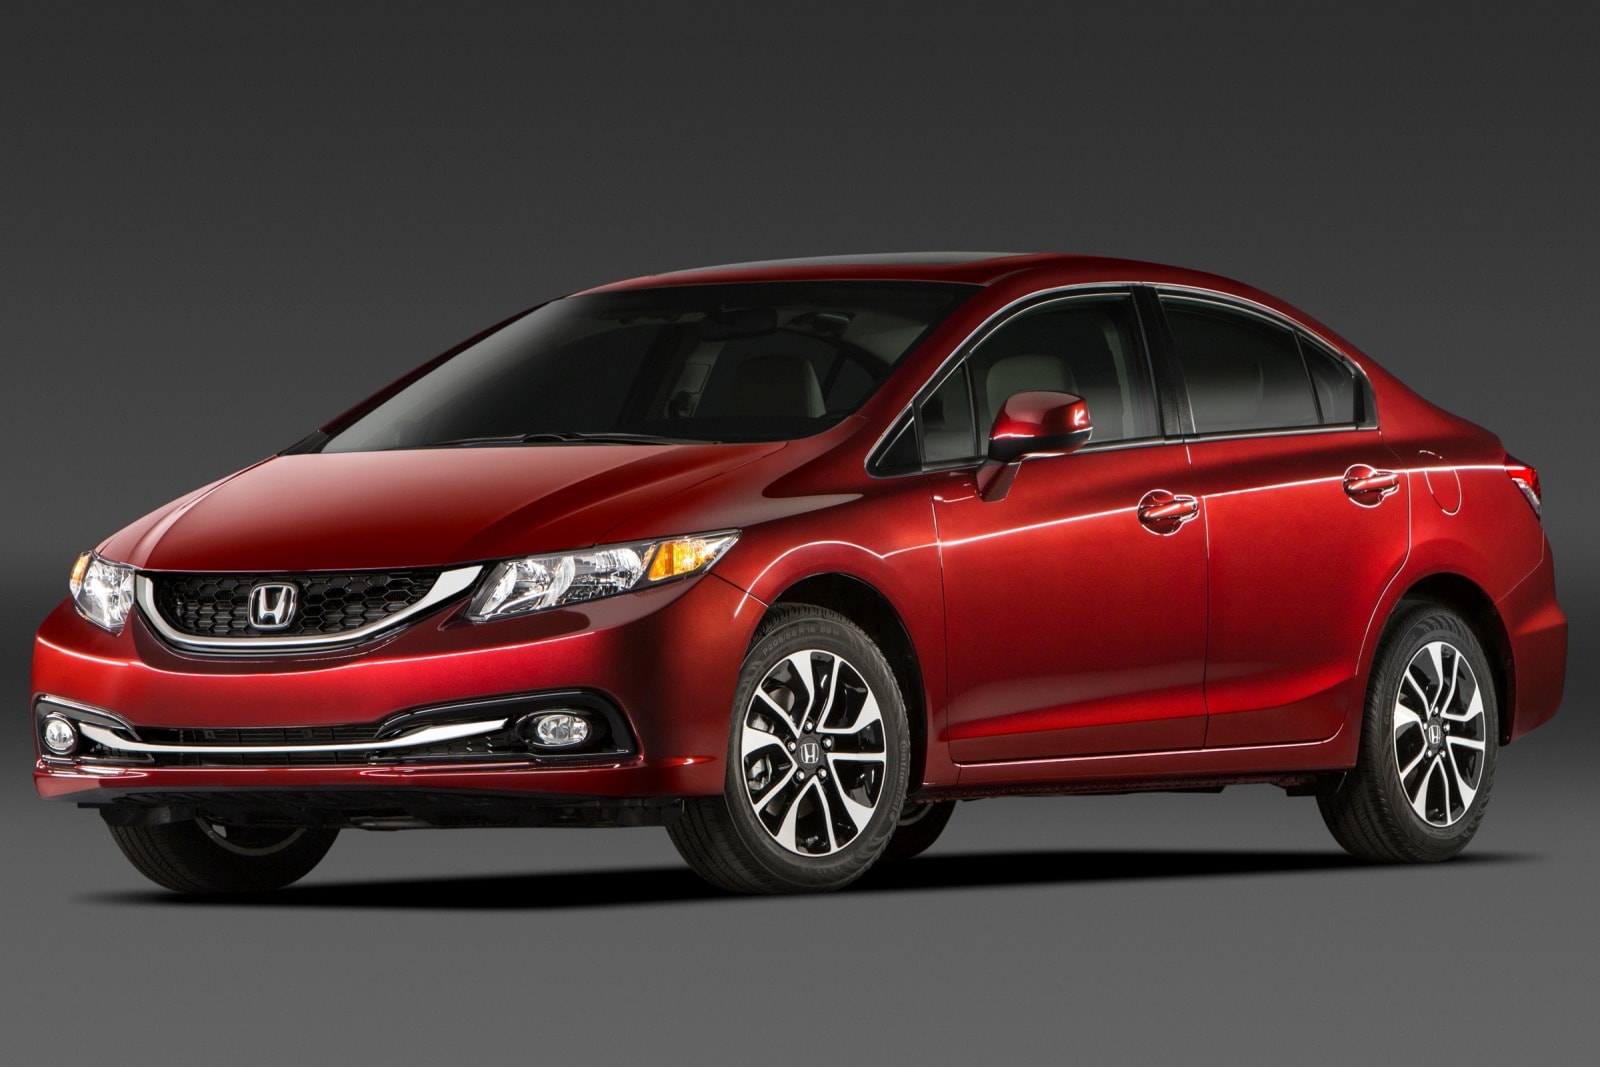 2014 Honda Civic Review & Ratings | Edmunds